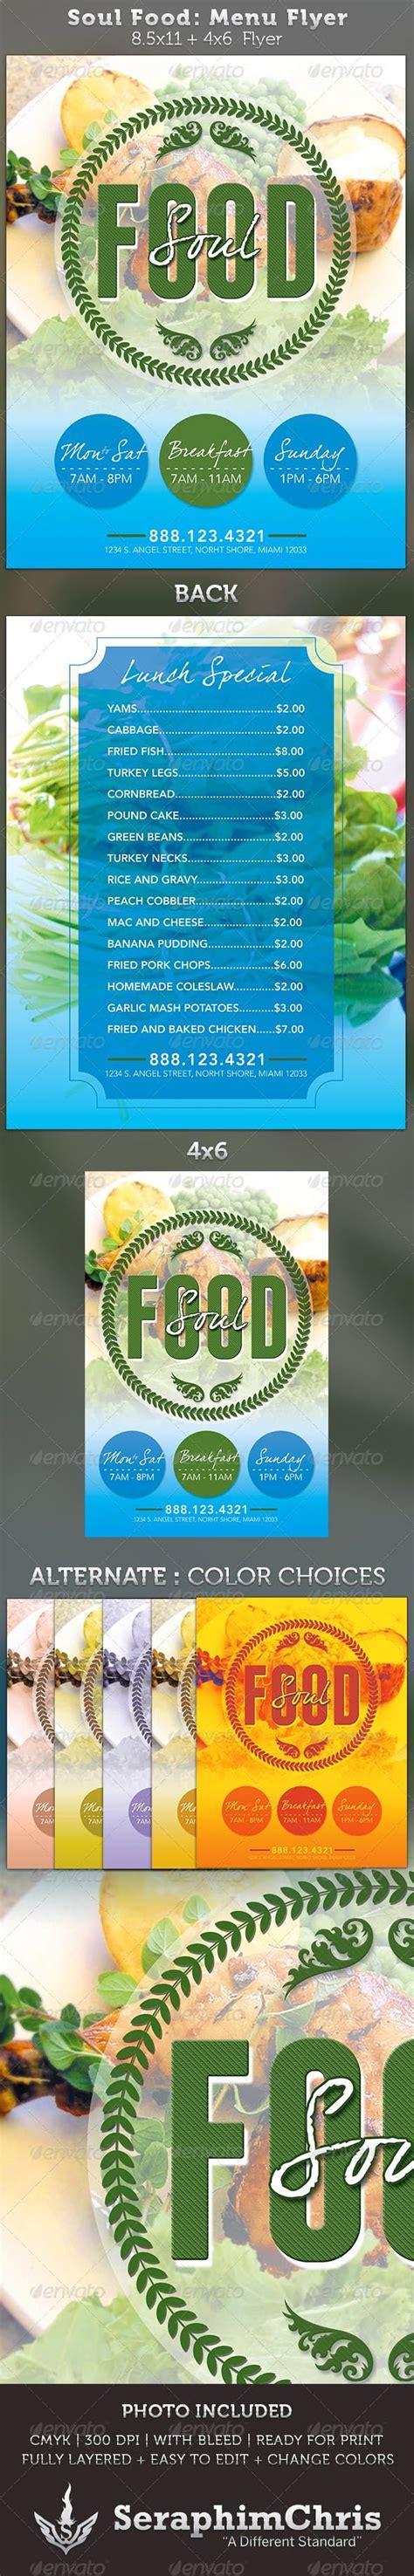 Free 19 dinner flyers in psd eps ms word indesign. Soul Food Menu Flyer Template | Menu flyer, Food menu template